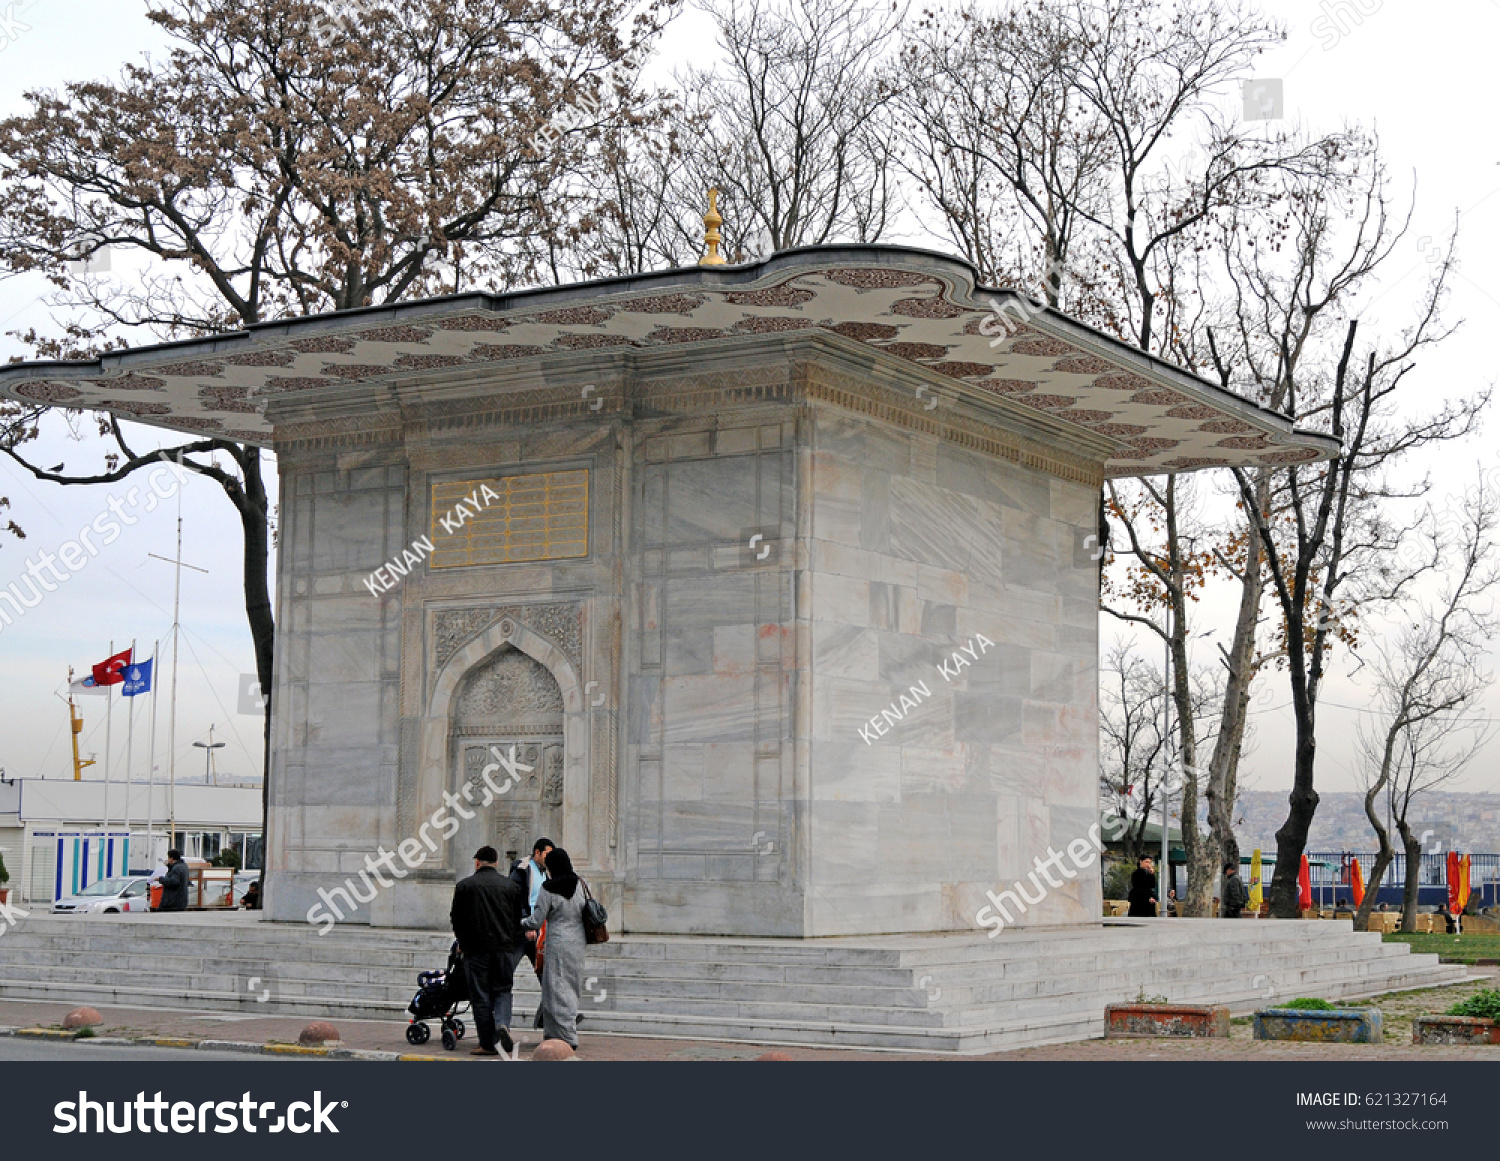 DECEMBER 24,2009 ISTANBUL.Hekimoglu Ali Pasha fountain in Findikli Istanbul. #621327164